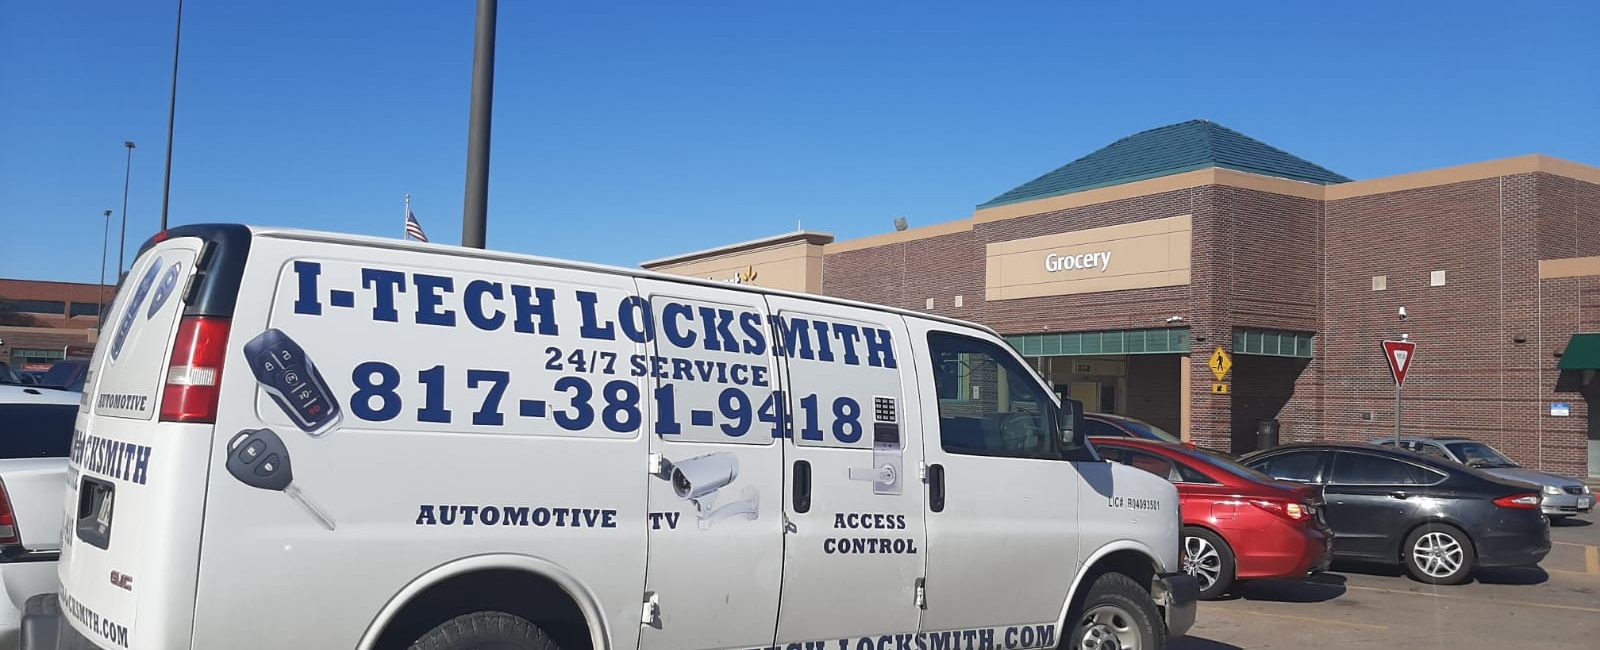 I-Tech Locksmith – Arlington 6